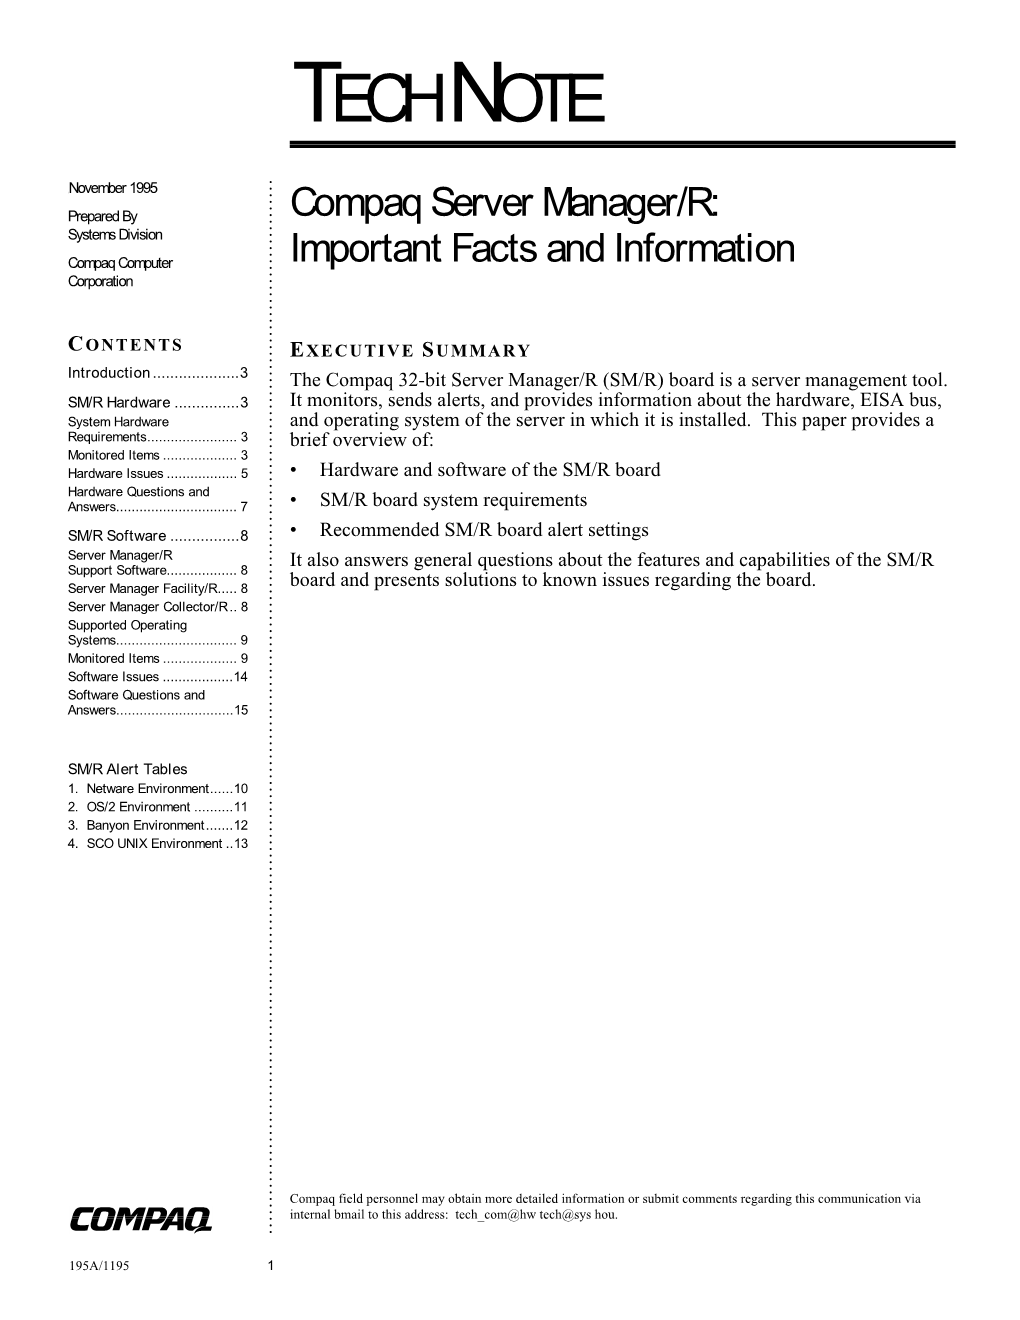 Compaq Server Manager/R